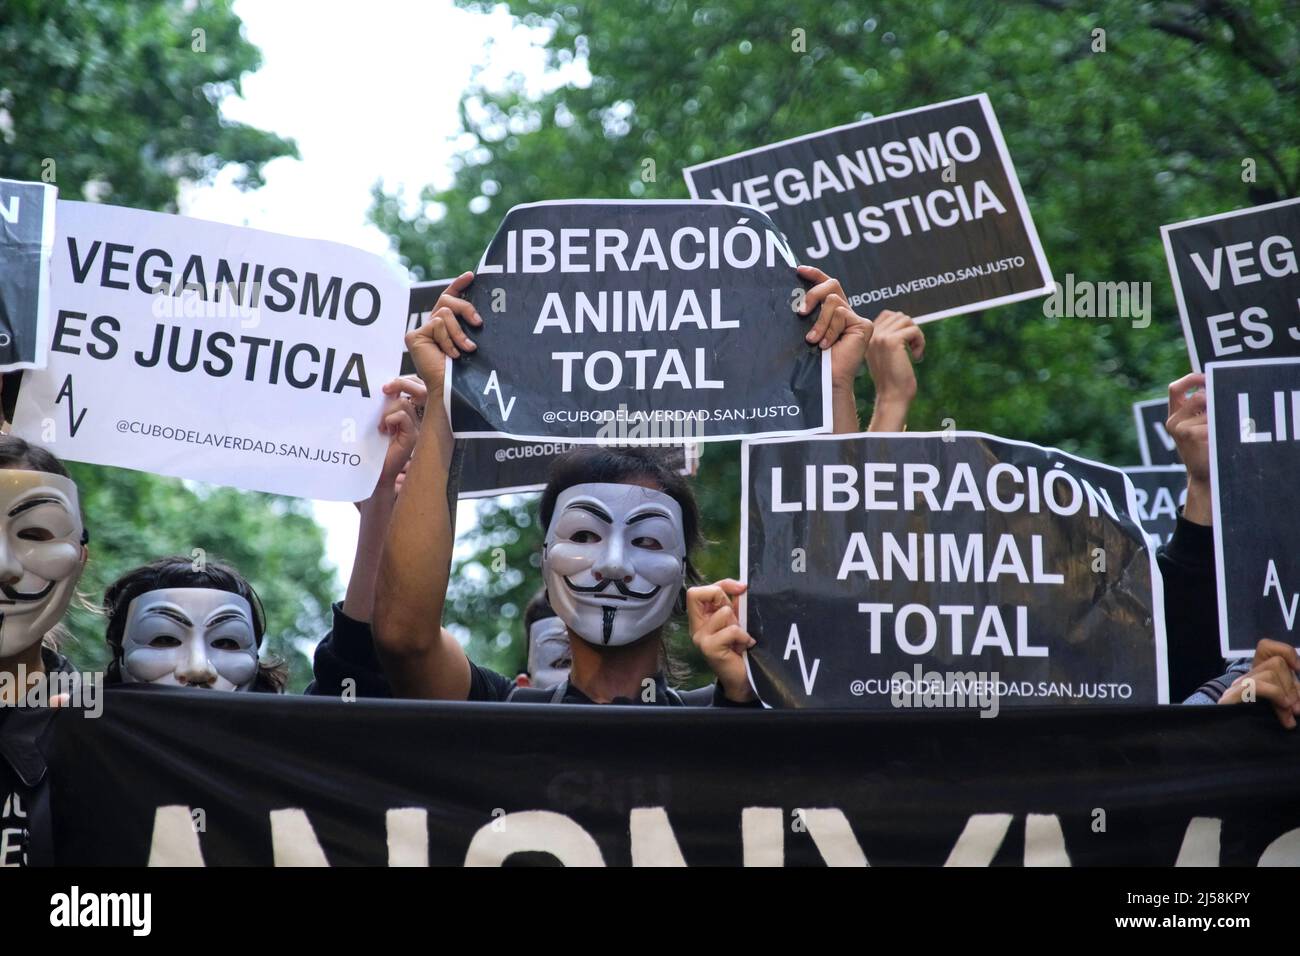 Buenos Aires, Argentine; 1 novembre 2021: Journée mondiale des Vega. Personnes avec des masques anonymes tenant des signes avec des messages animalistes: Libération totale des animaux. Vég Banque D'Images